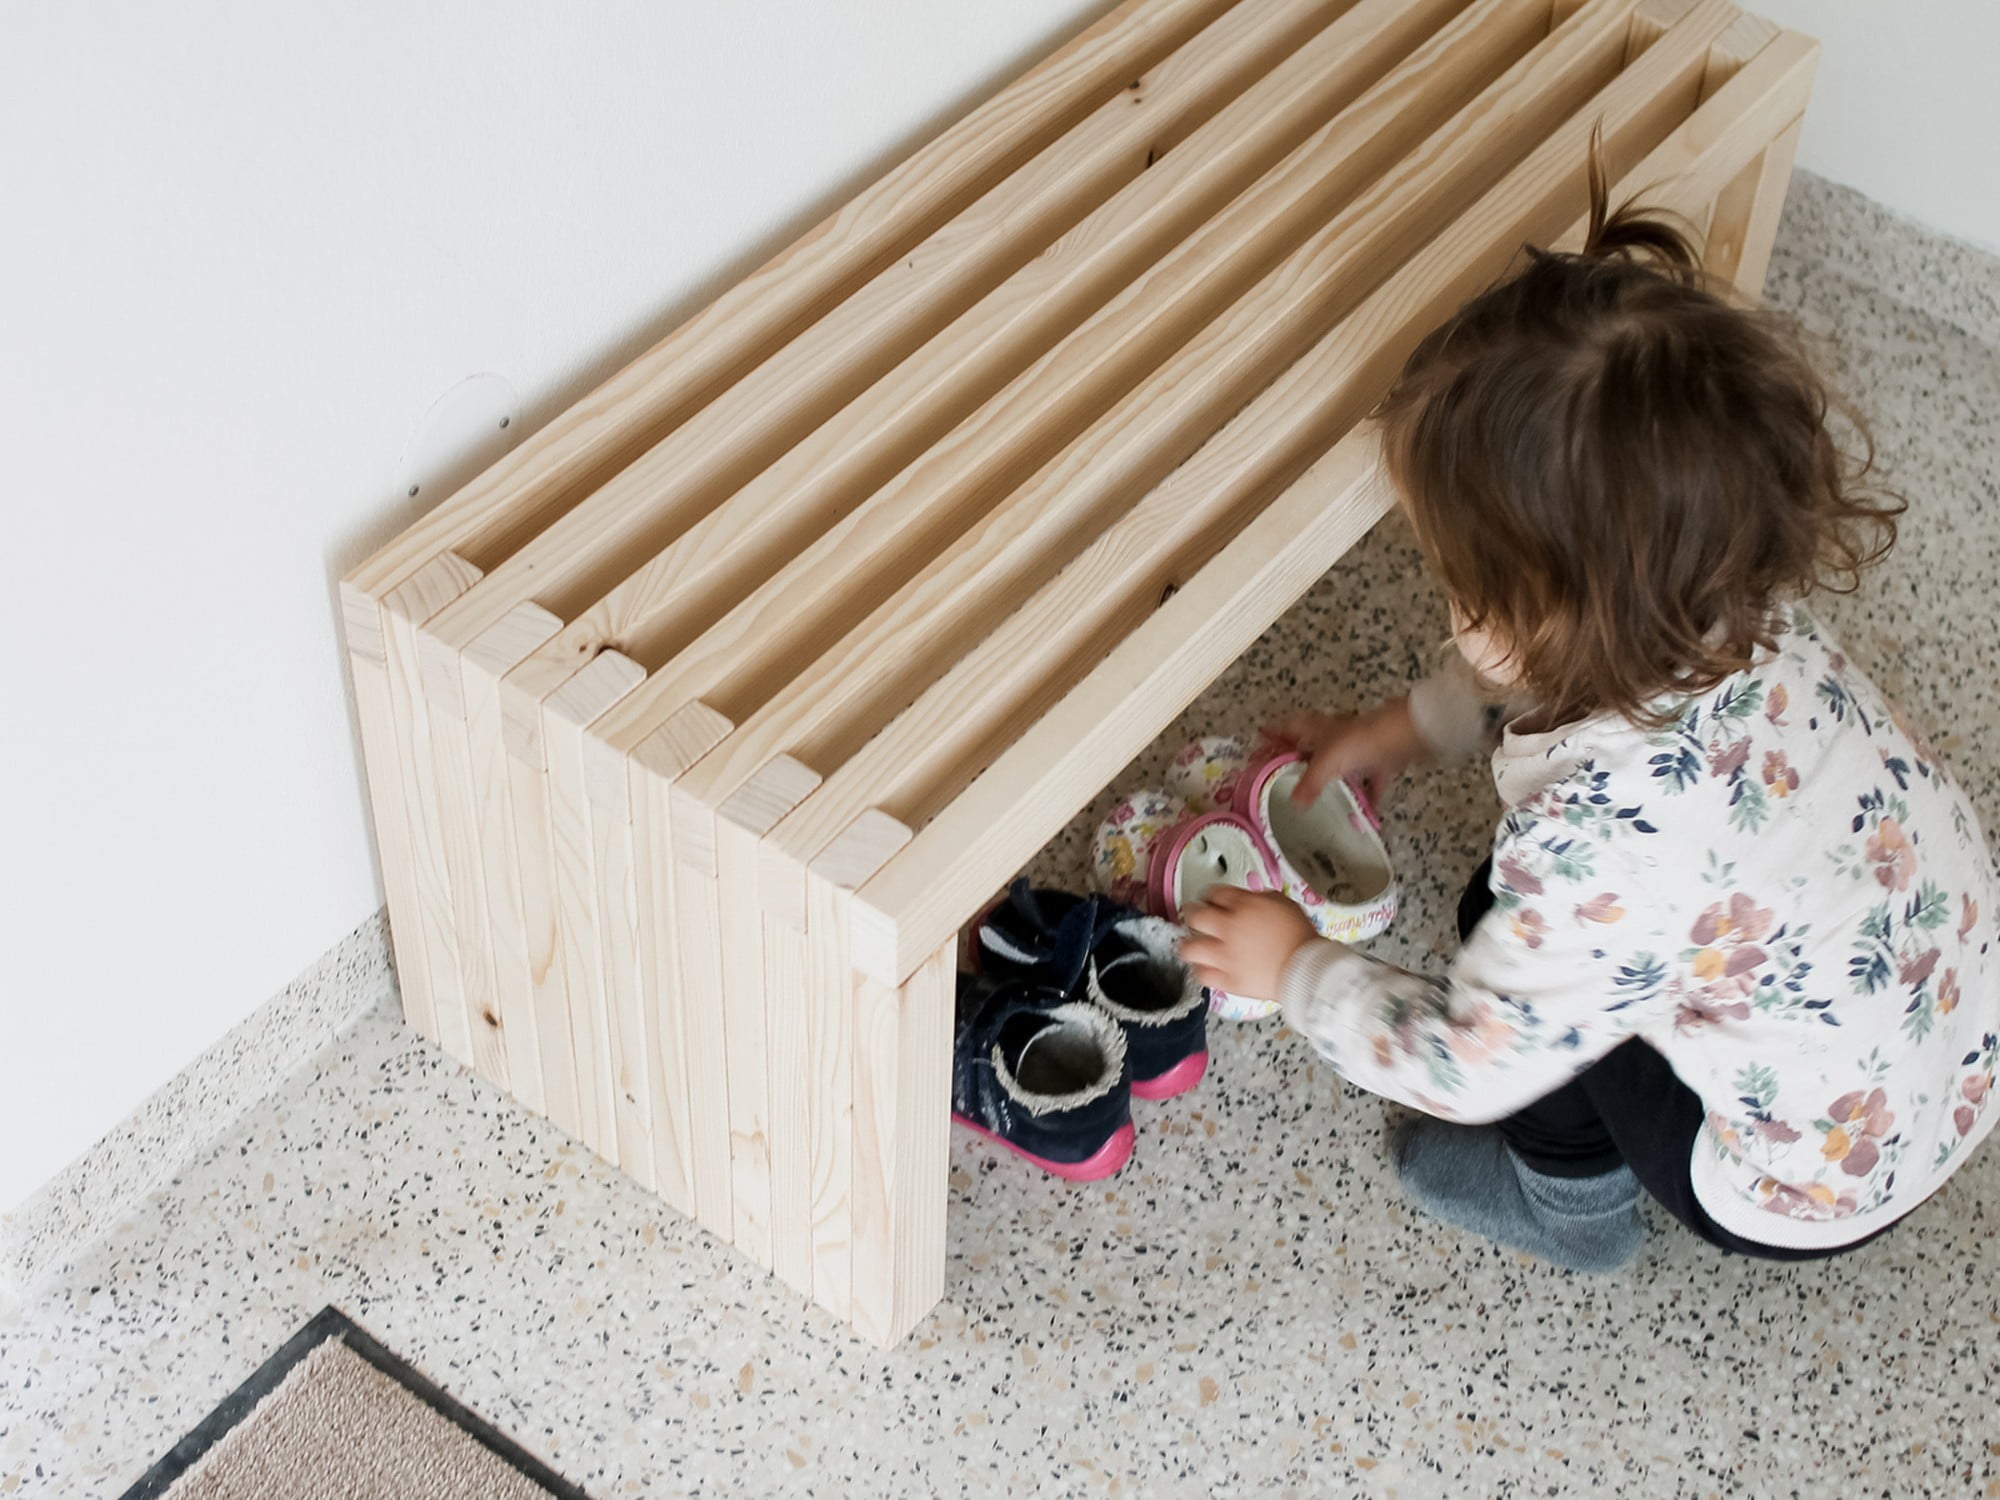 Această bancă din lemn are înălțimea de 30 cm, potrivită pentru copii, dar dimensiunea poate fi ușor modificată conform înălțimii unui adult.